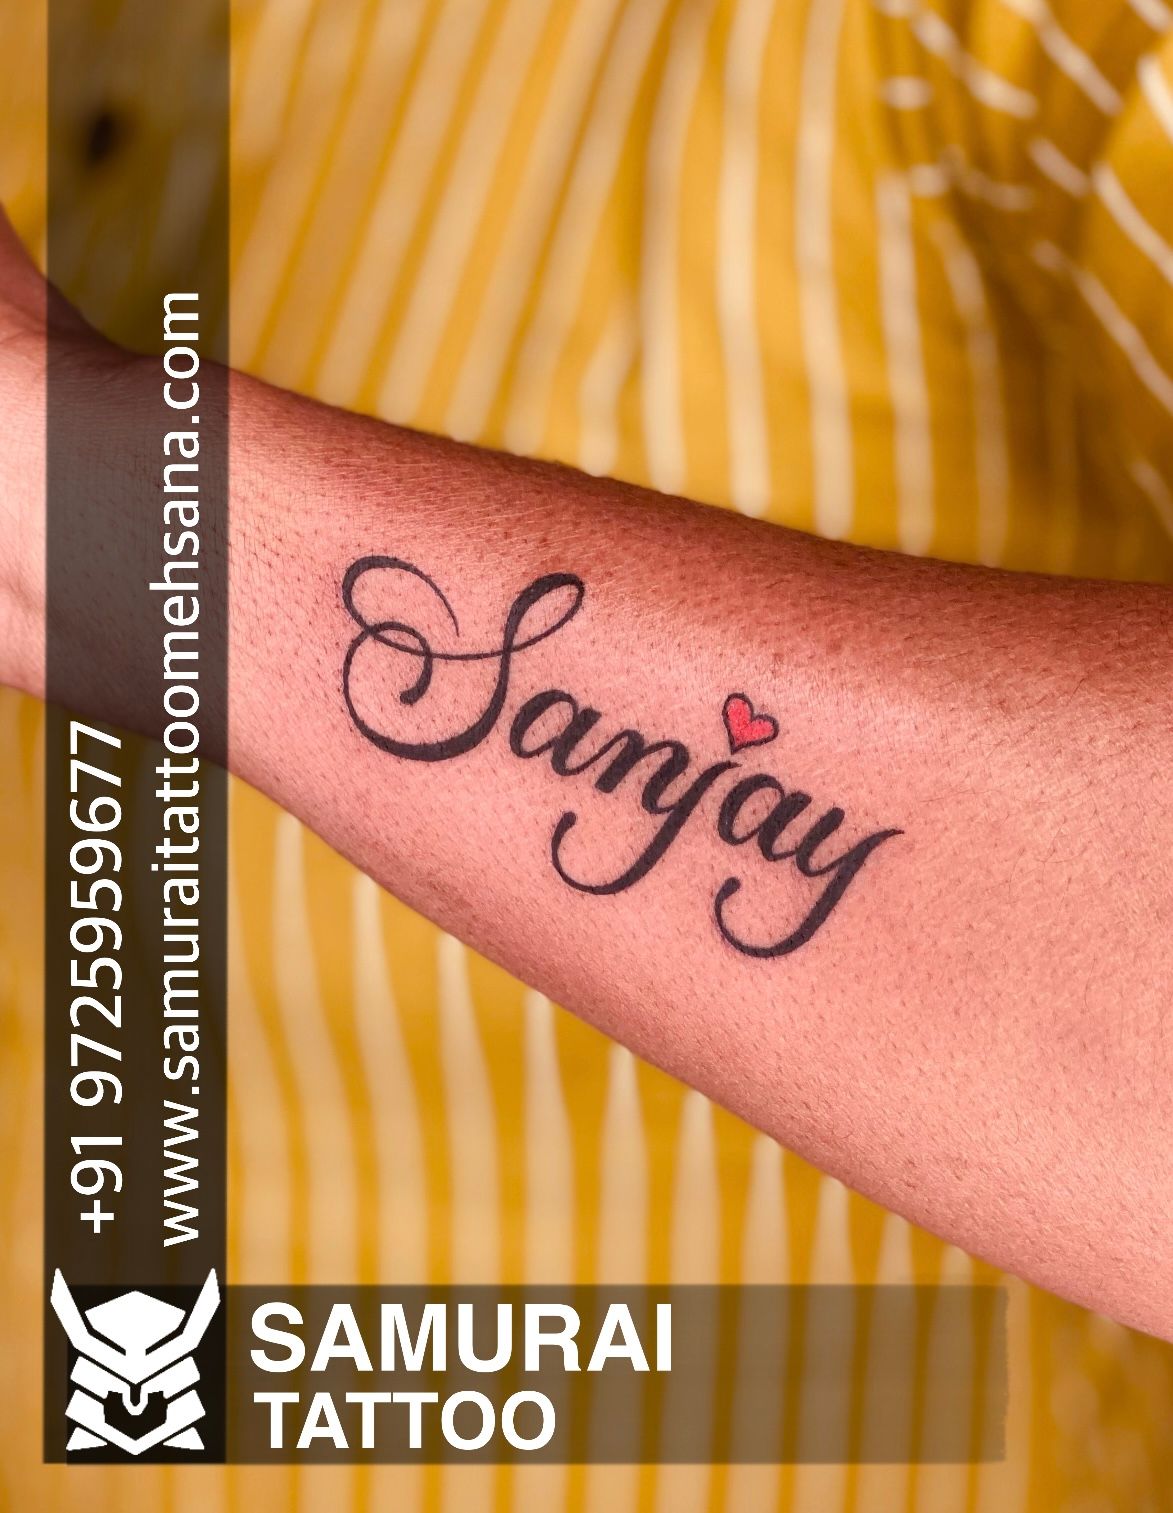 Sanjay Name Tattoo Sanjay Name Tattoos  Name tattoo on hand Name tattoos  Name tattoos on arm